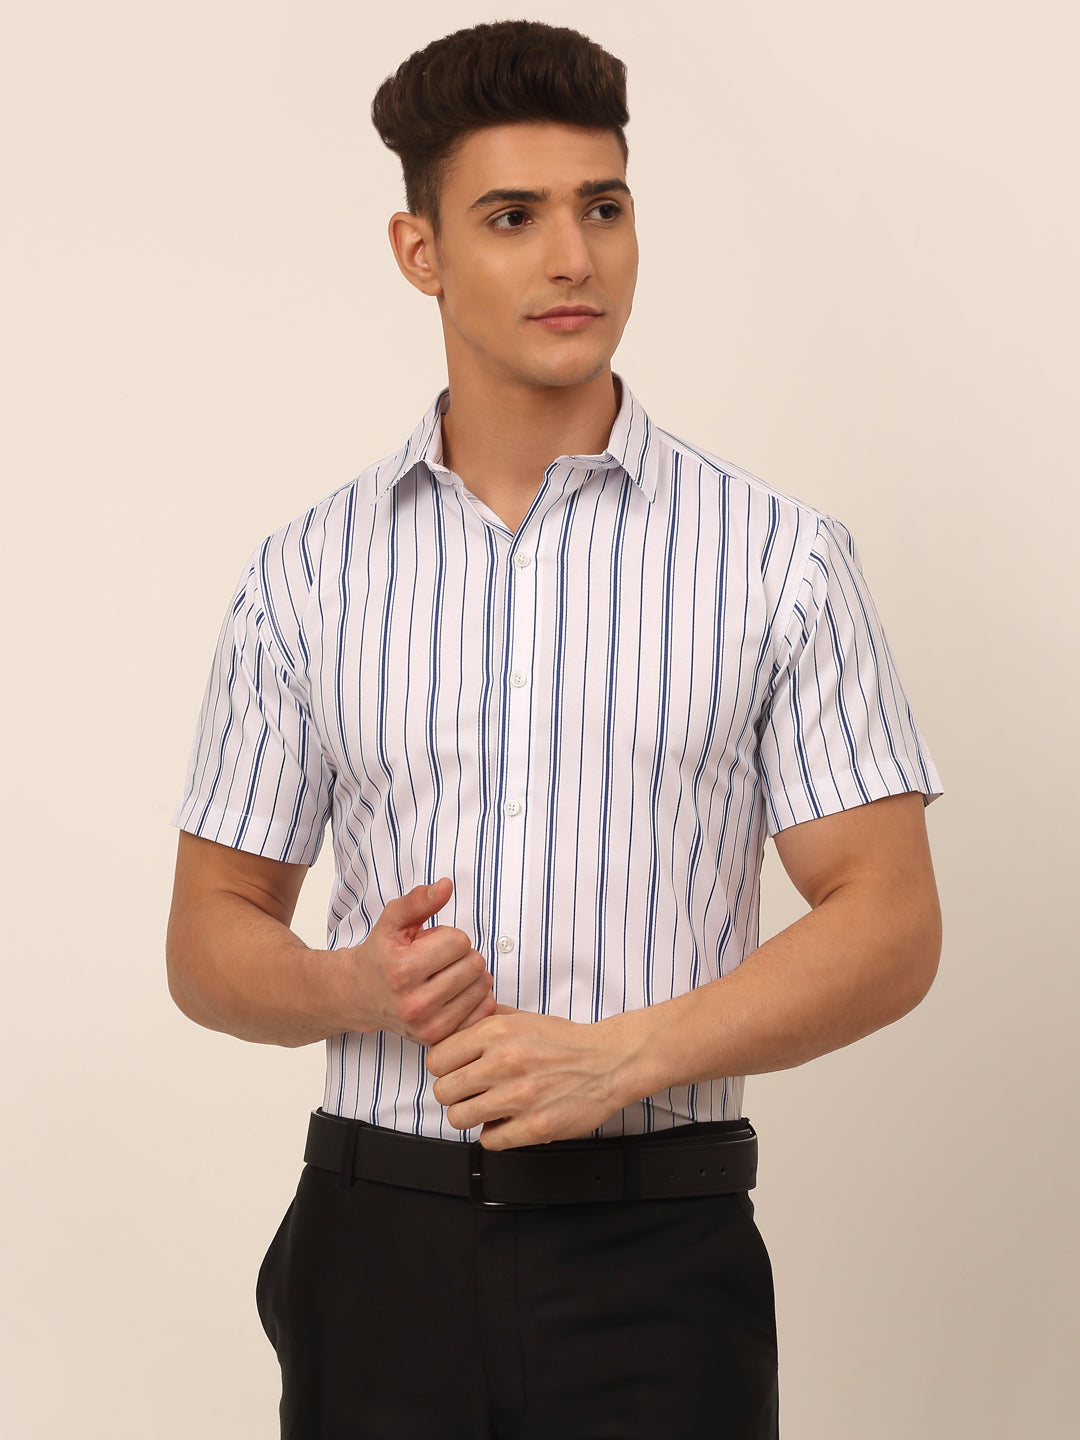 Men's Cotton Striped Formal Shirts ( SF 822White )